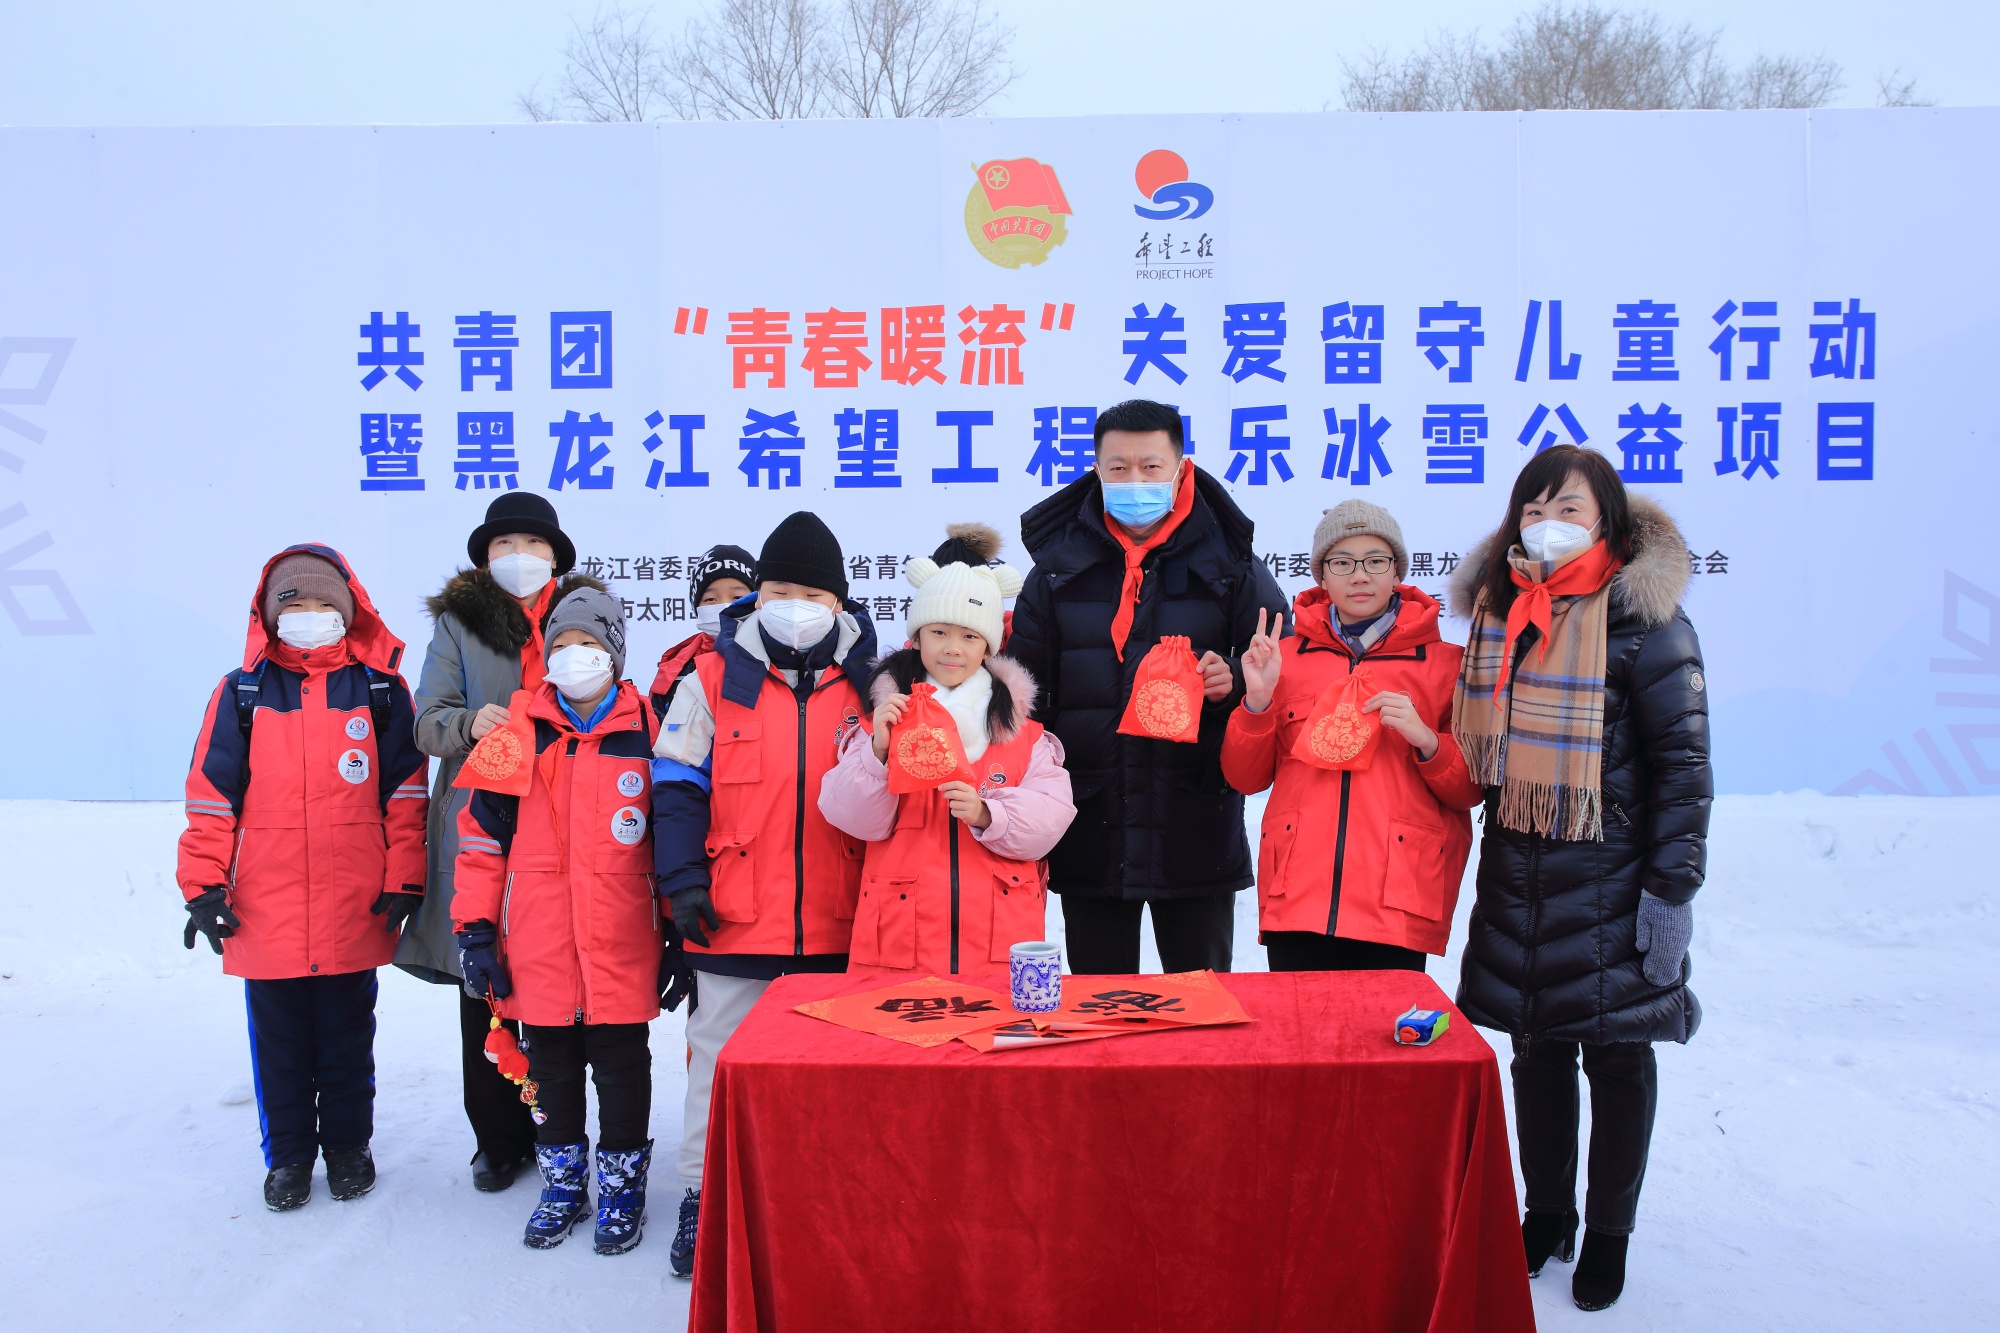 黑龙江希望工程快乐冰雪公益项目启动